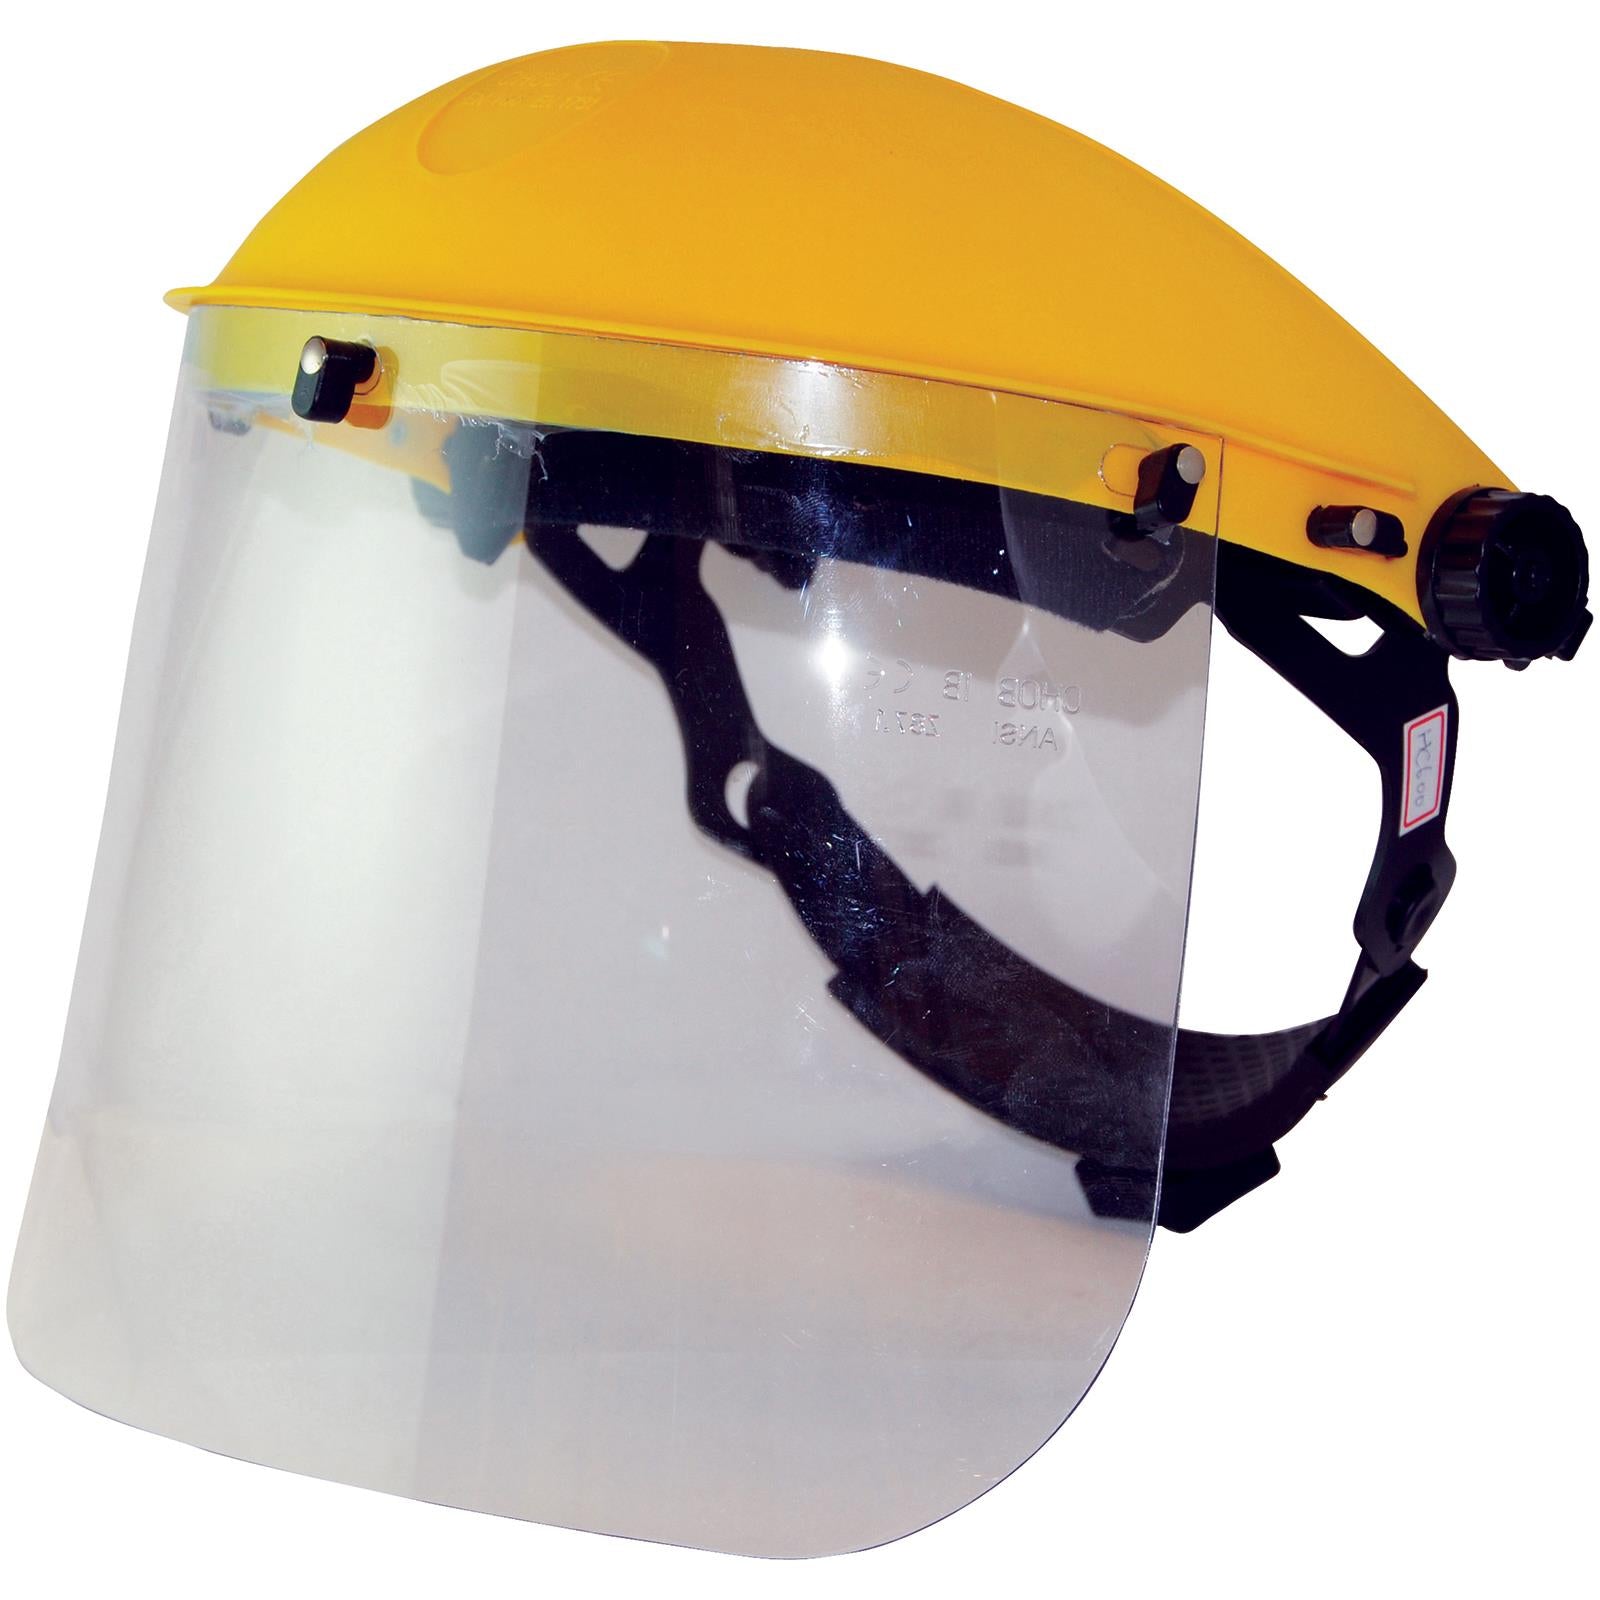 Silverline Visor Face Shield With Ratchet Adjustment Resistant Helmet